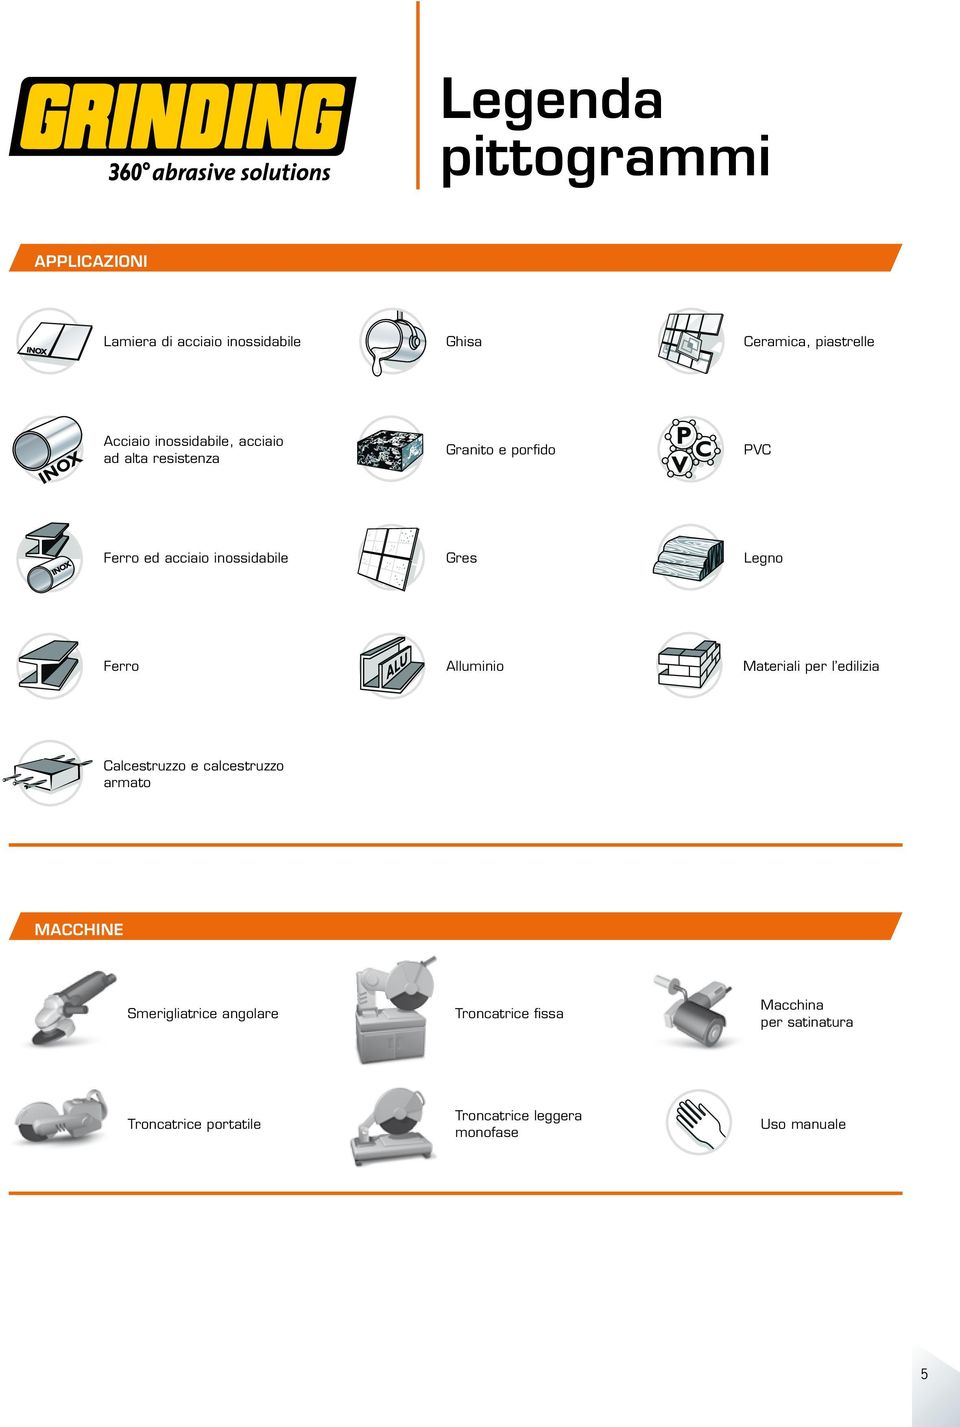 Ferro Alluminio Materiali per l edilizia Calcestruzzo e calcestruzzo armato MACCHINE Smerigliatrice